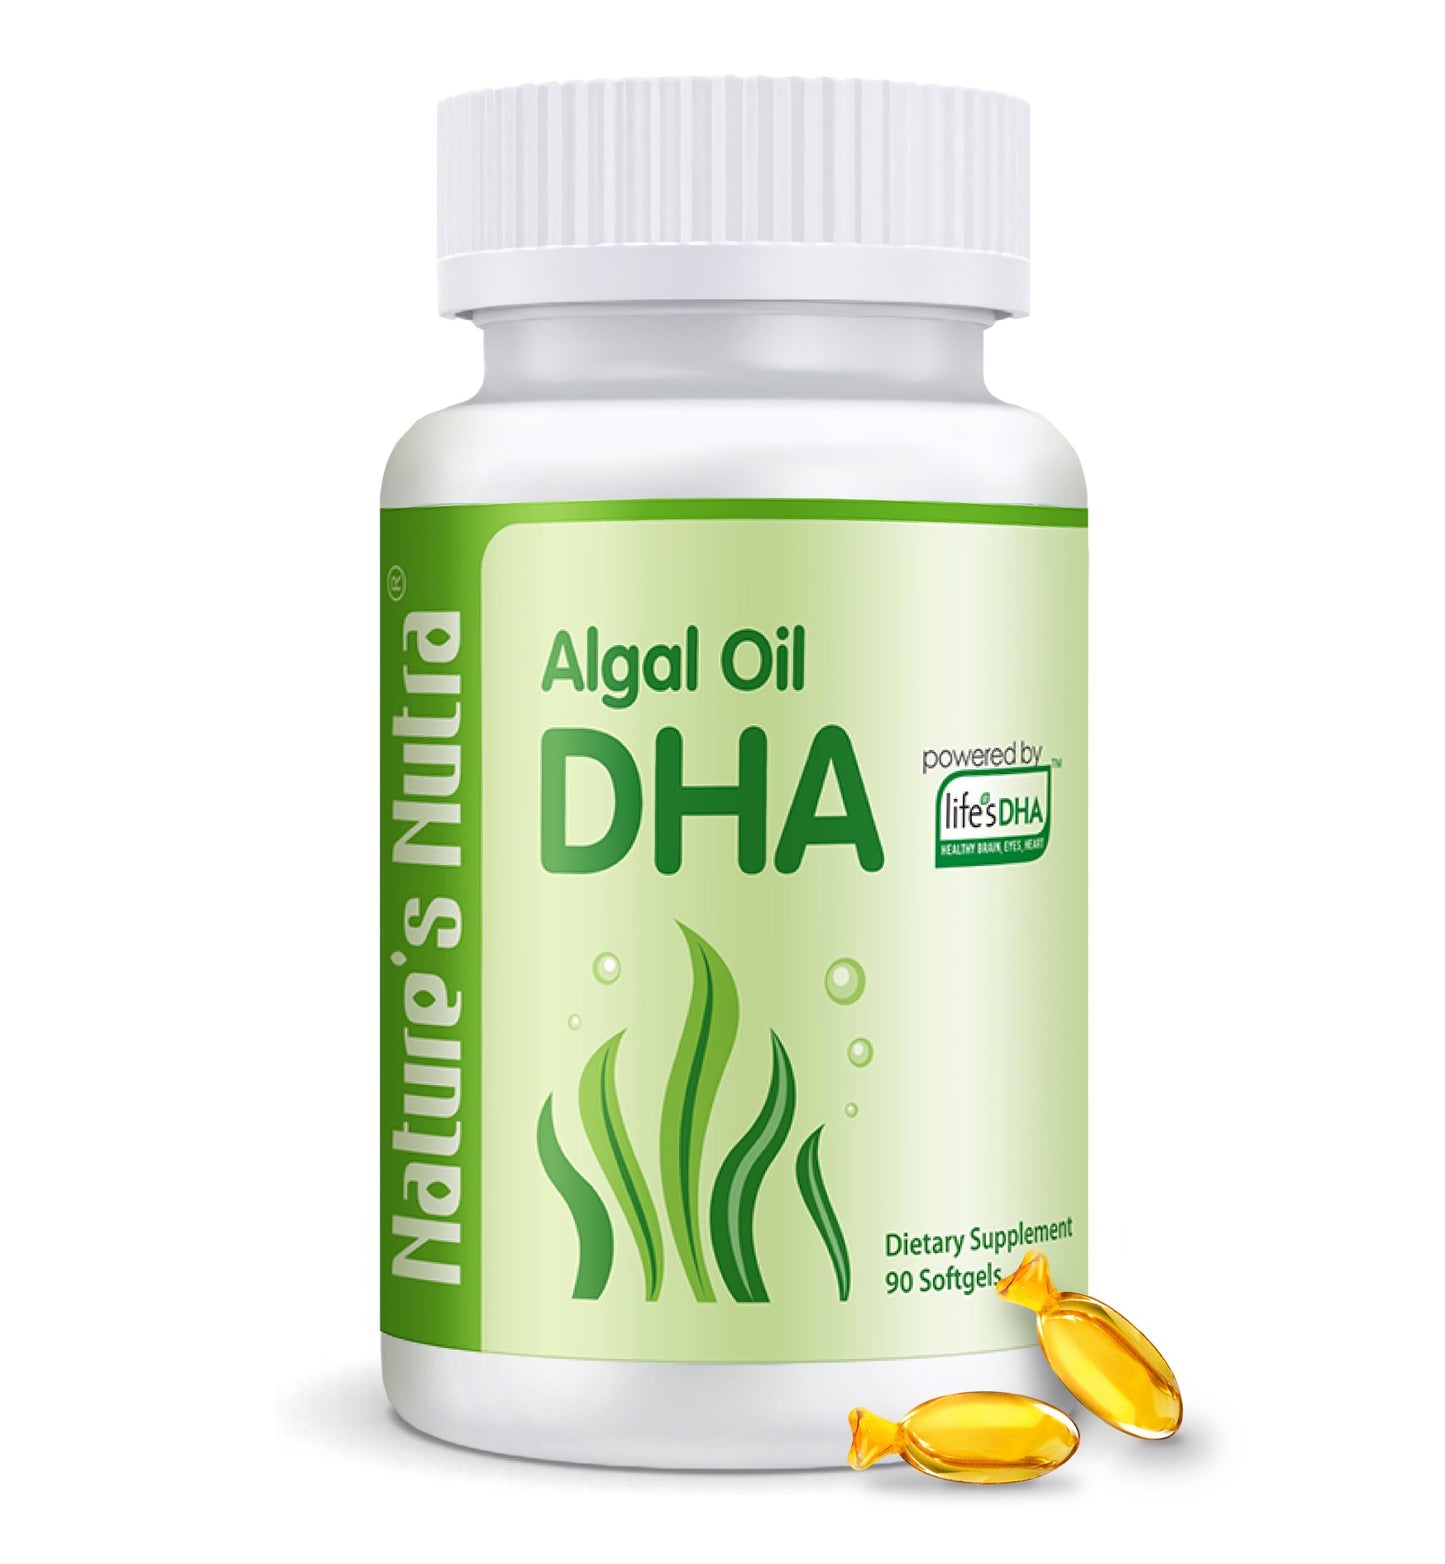 Algal Oil DHA Softgel